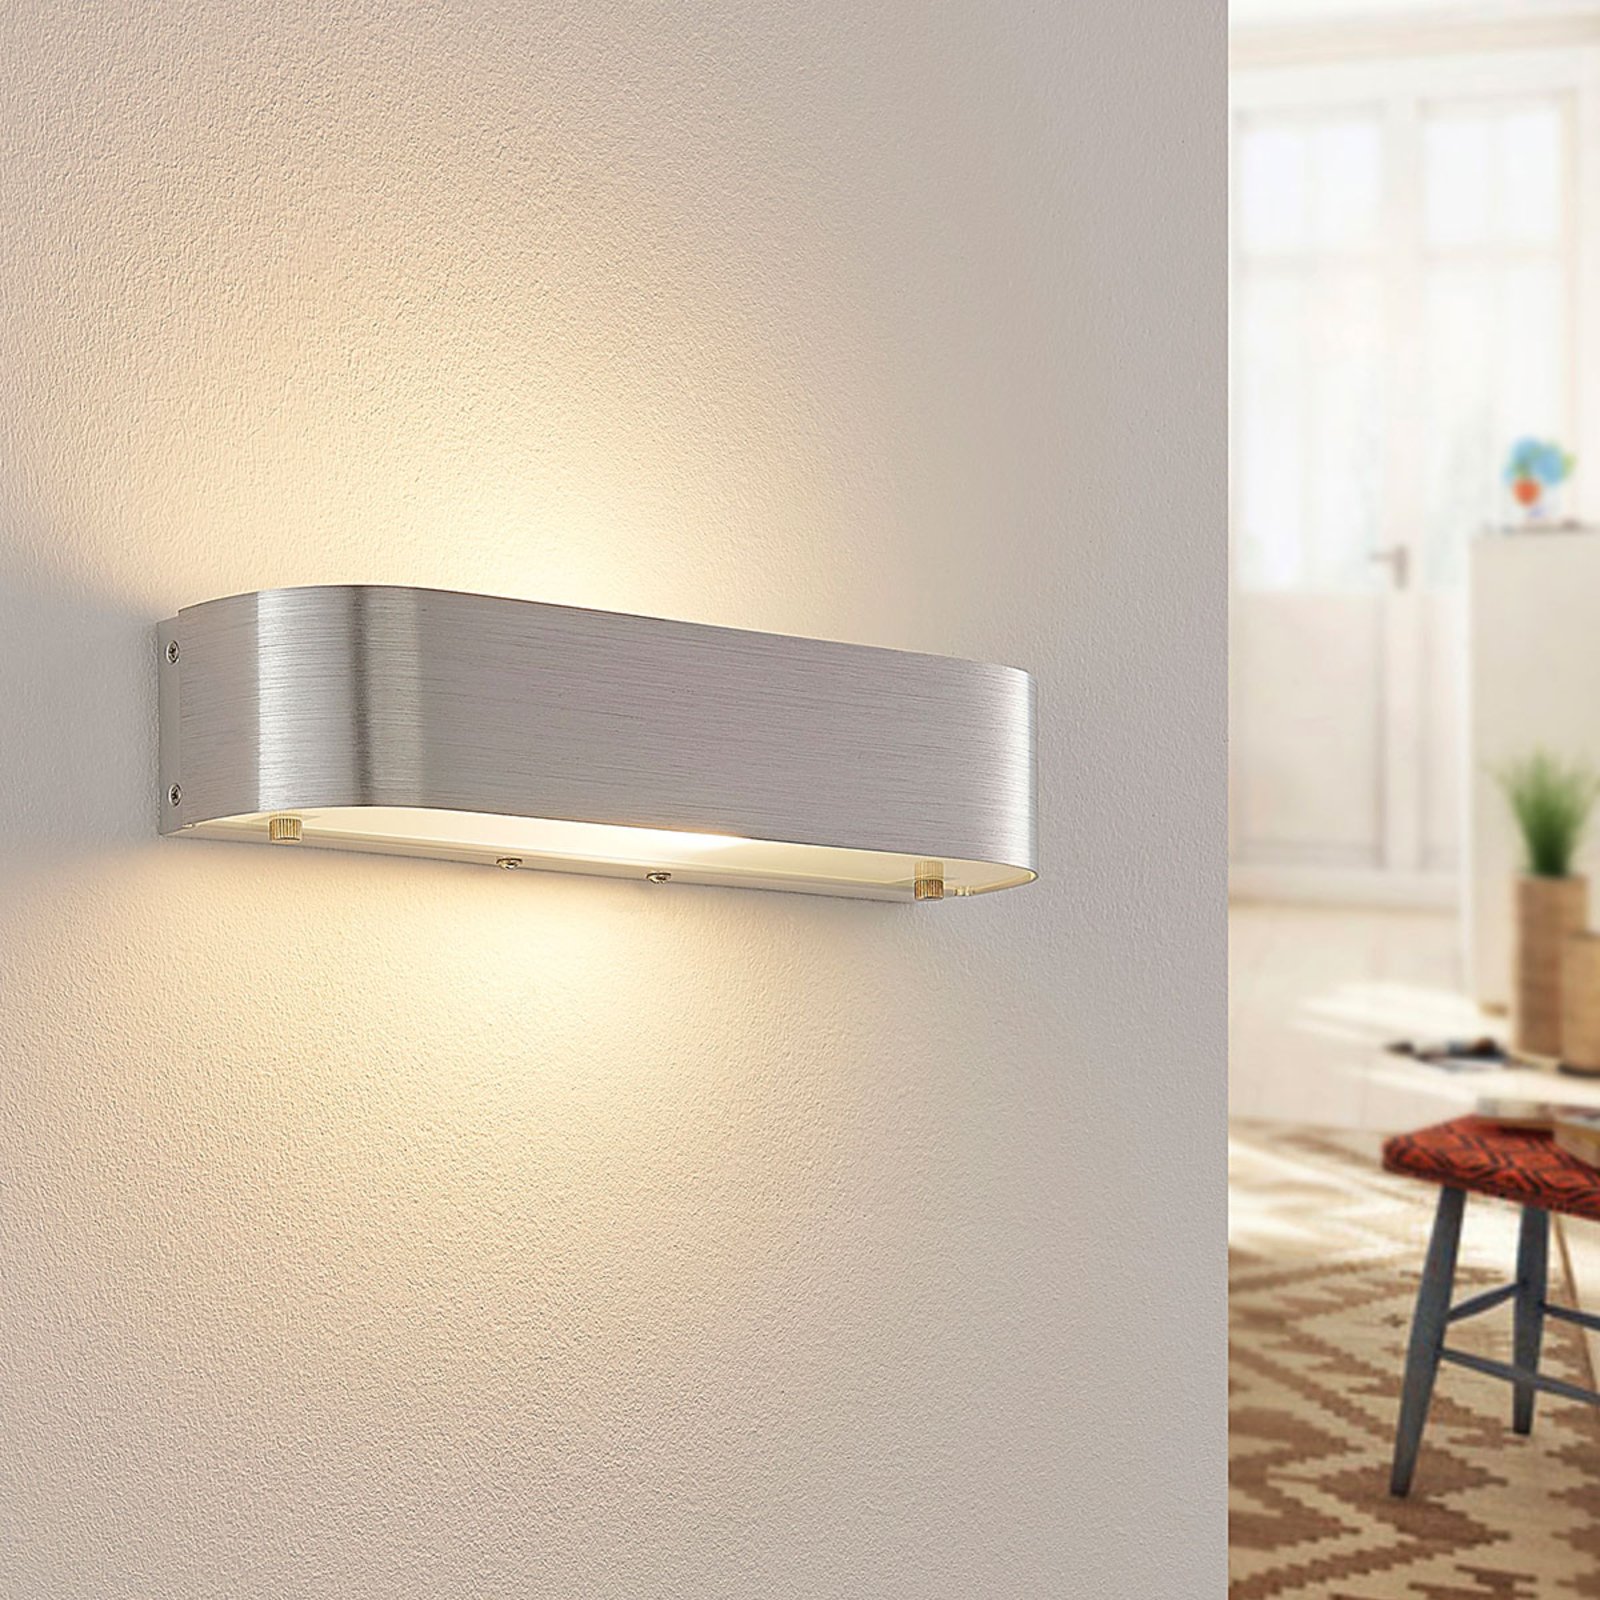 Nika wall light with an E14 socket, aluminium